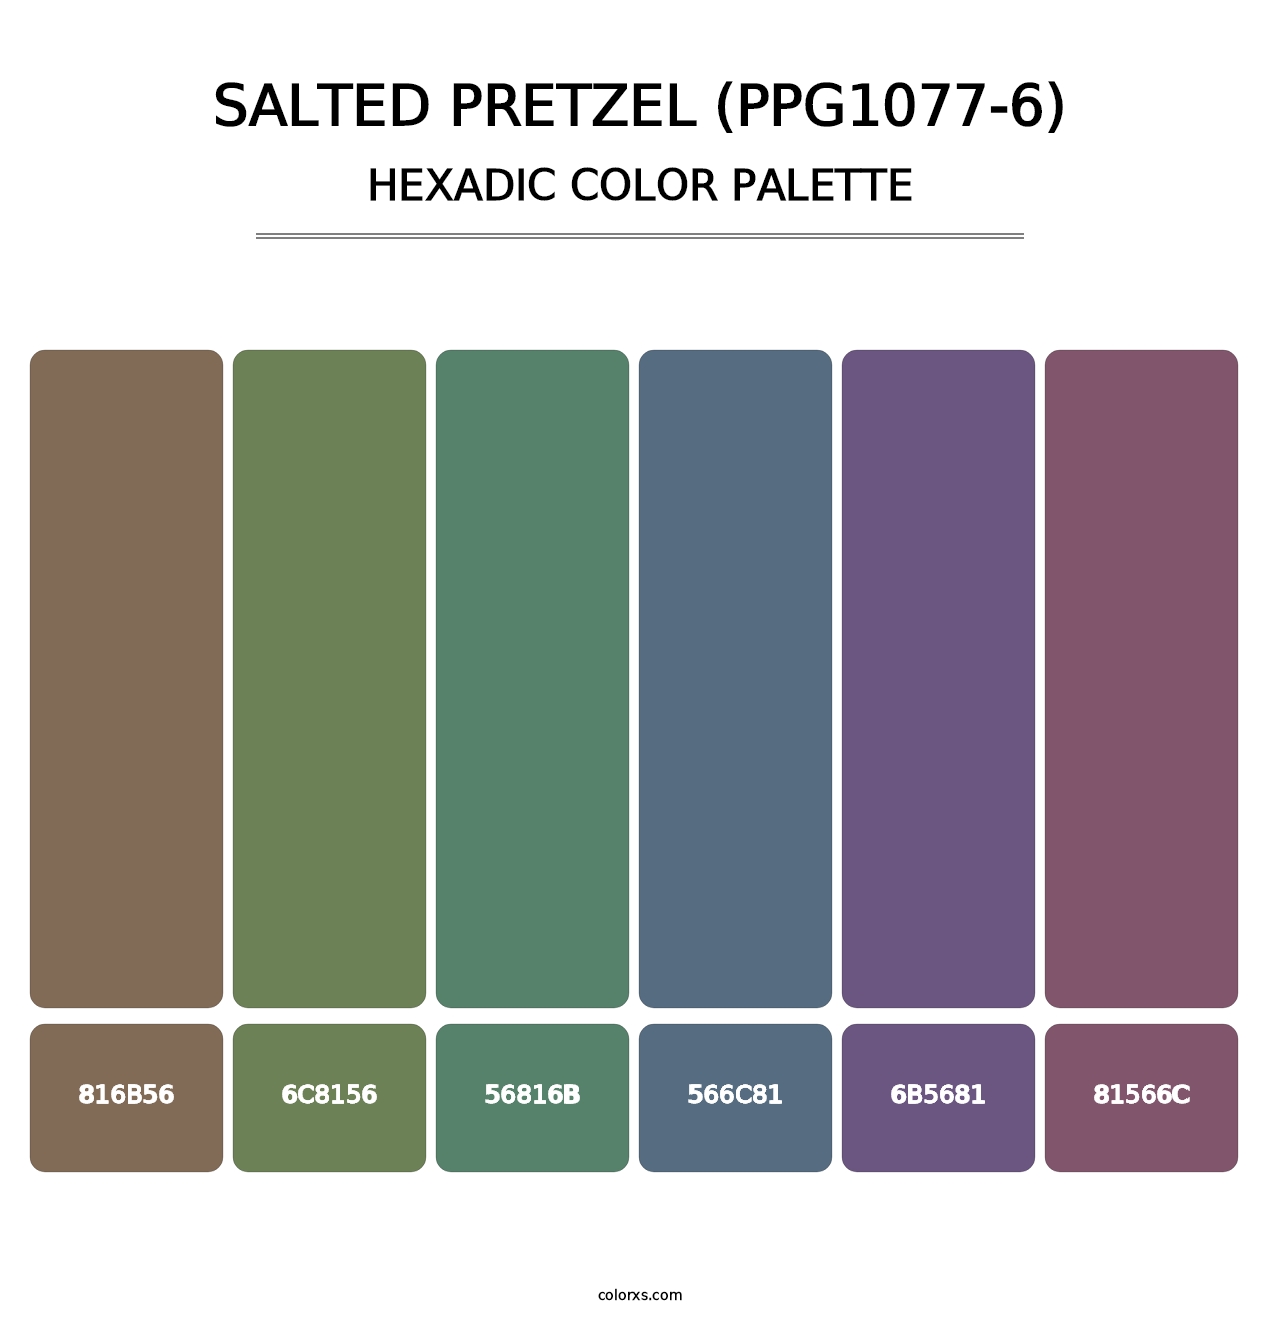 Salted Pretzel (PPG1077-6) - Hexadic Color Palette